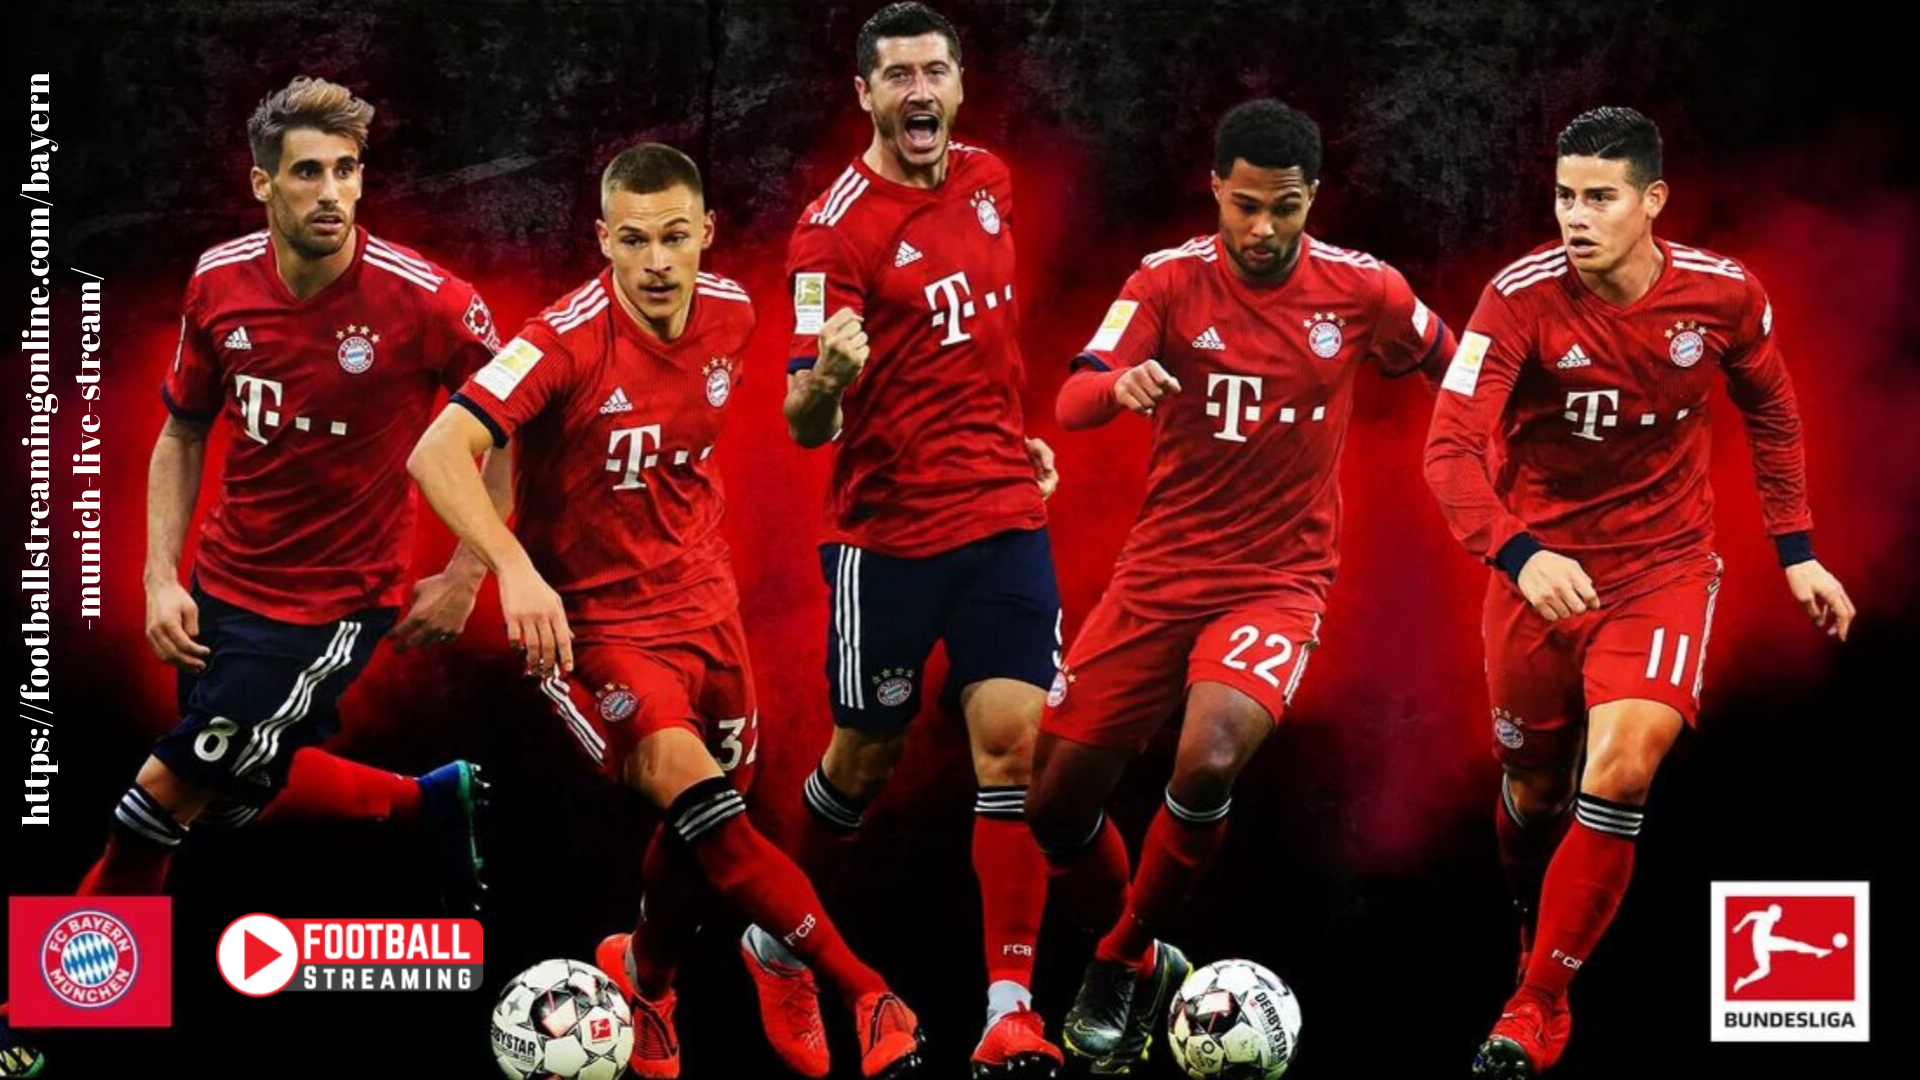 Bayern Munich Wallpaper 2020 Munich FC News